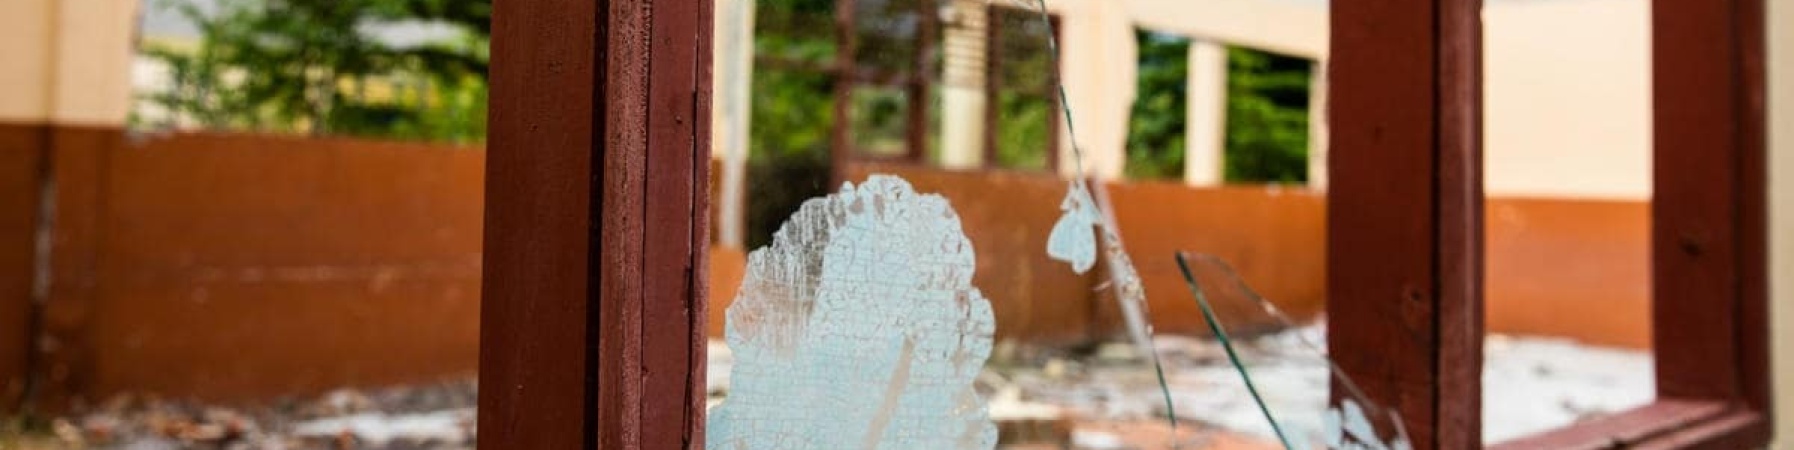 in primo piano il vetro rotto di una scuola distrutta dal terremoto in indonesia